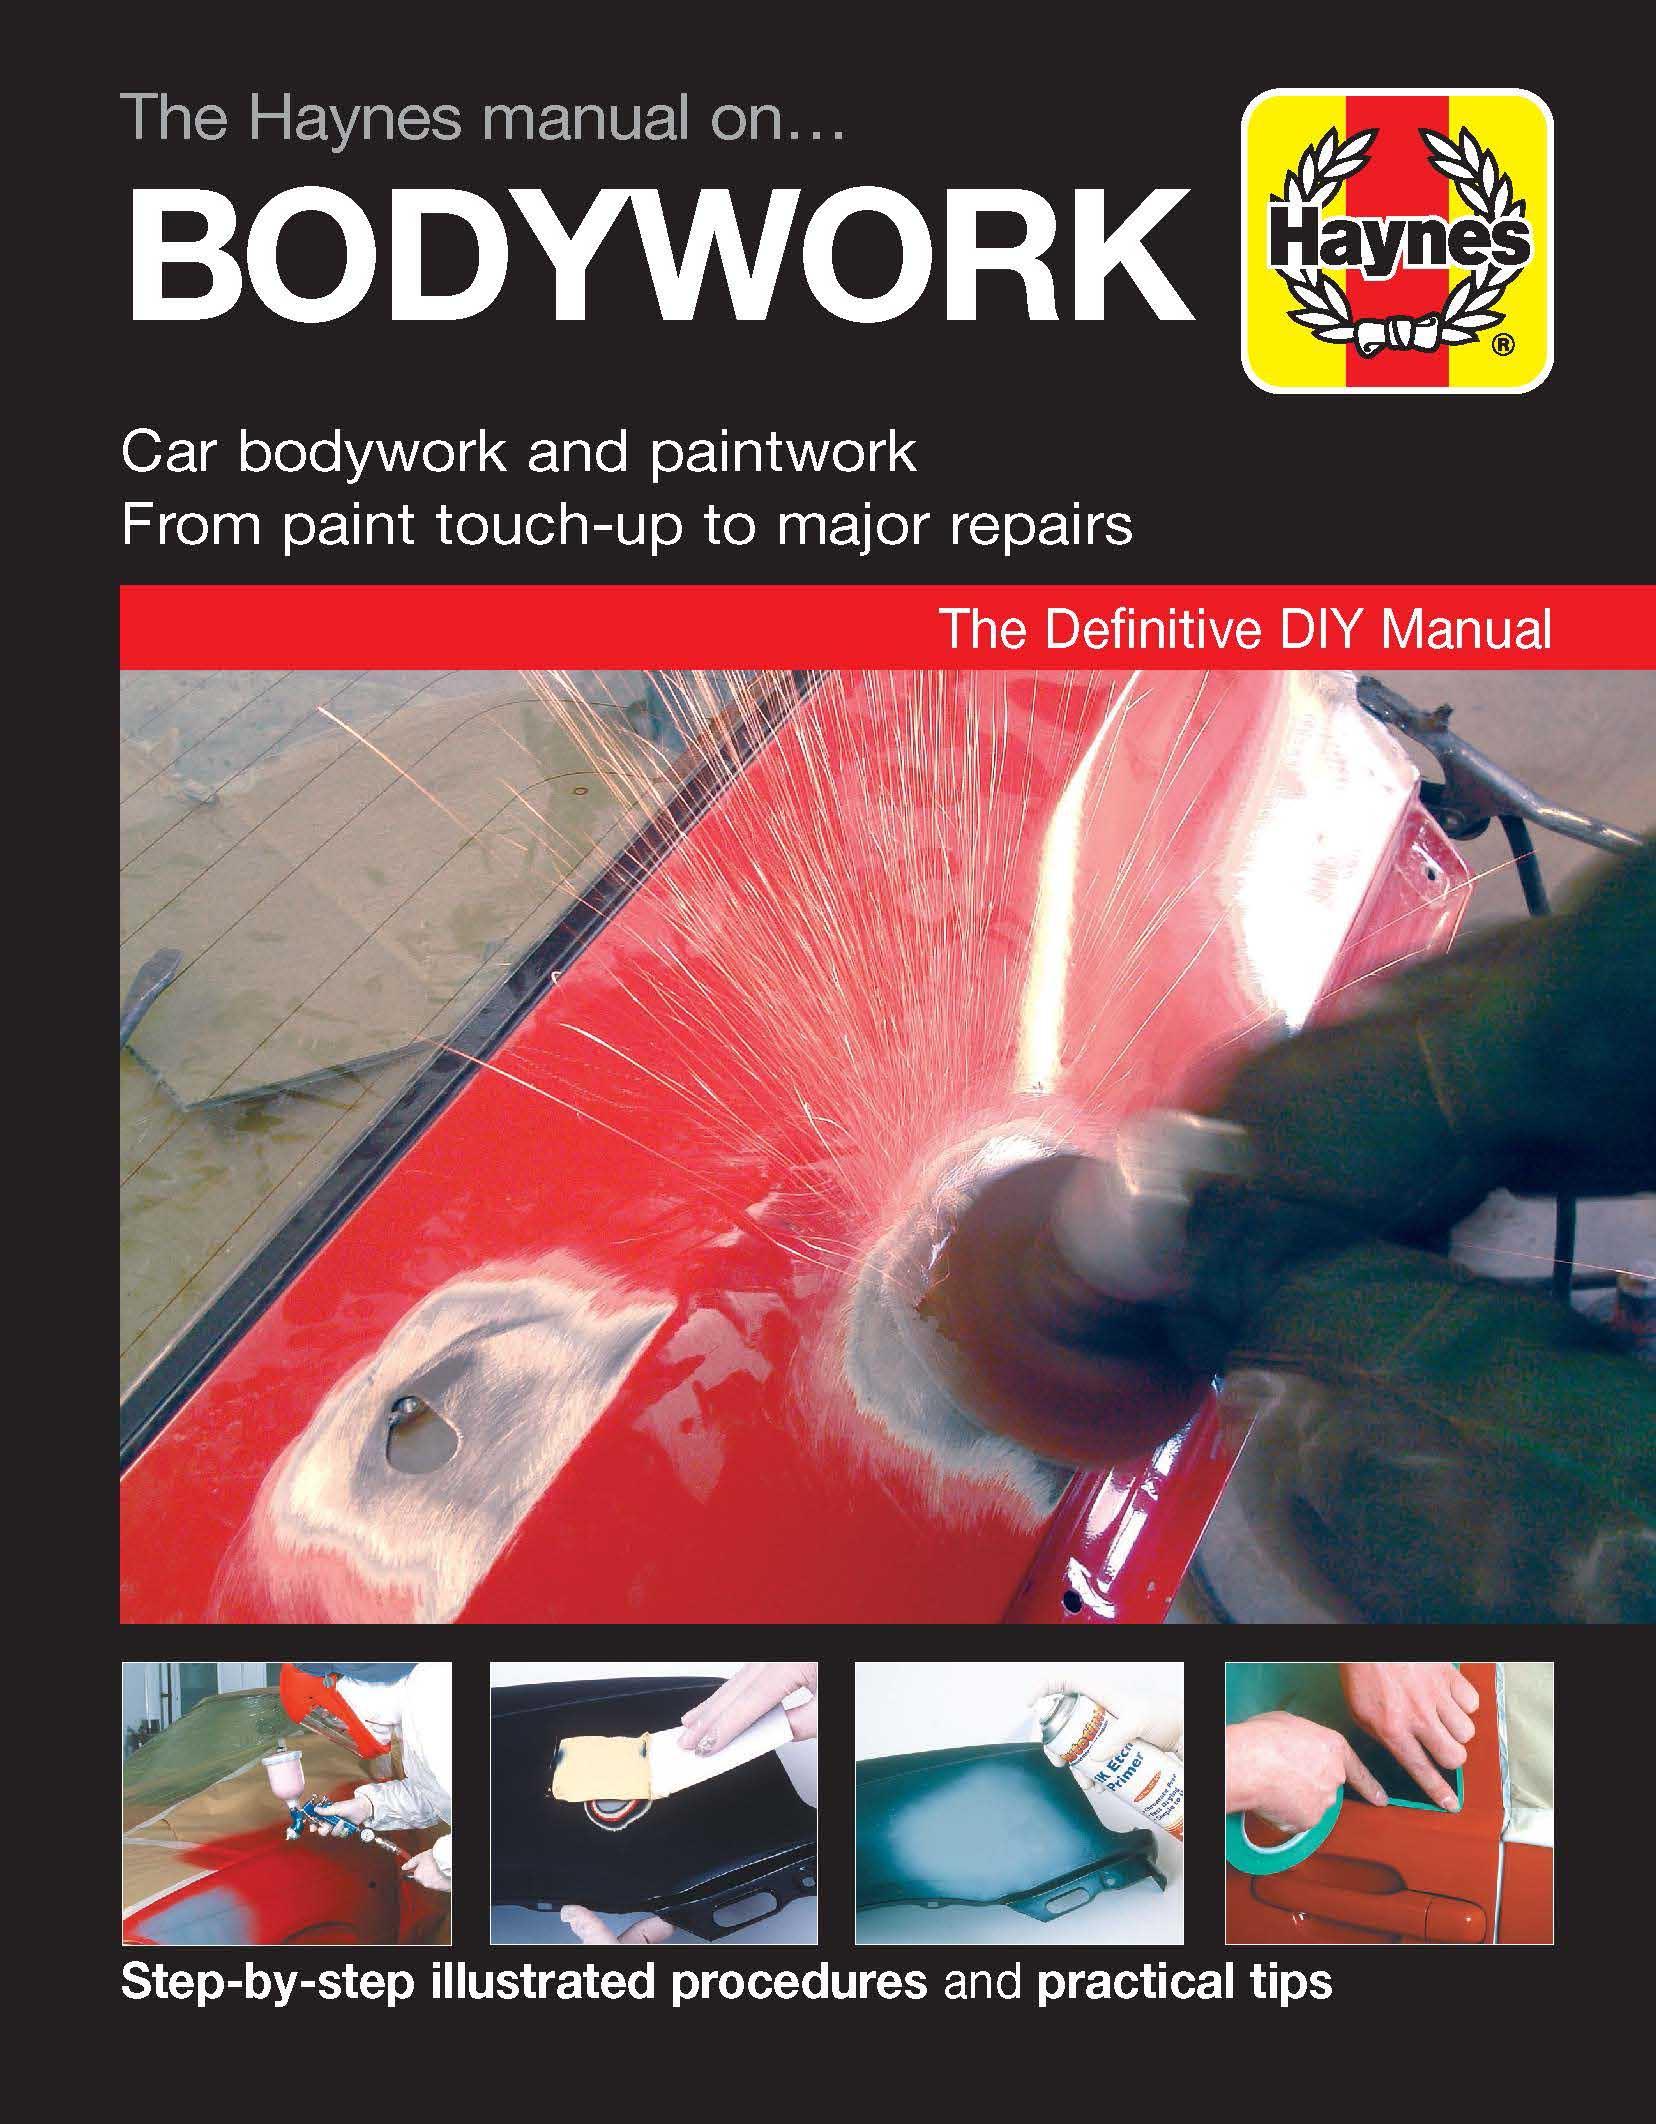 Haynes Car Bodywork Repair Manual